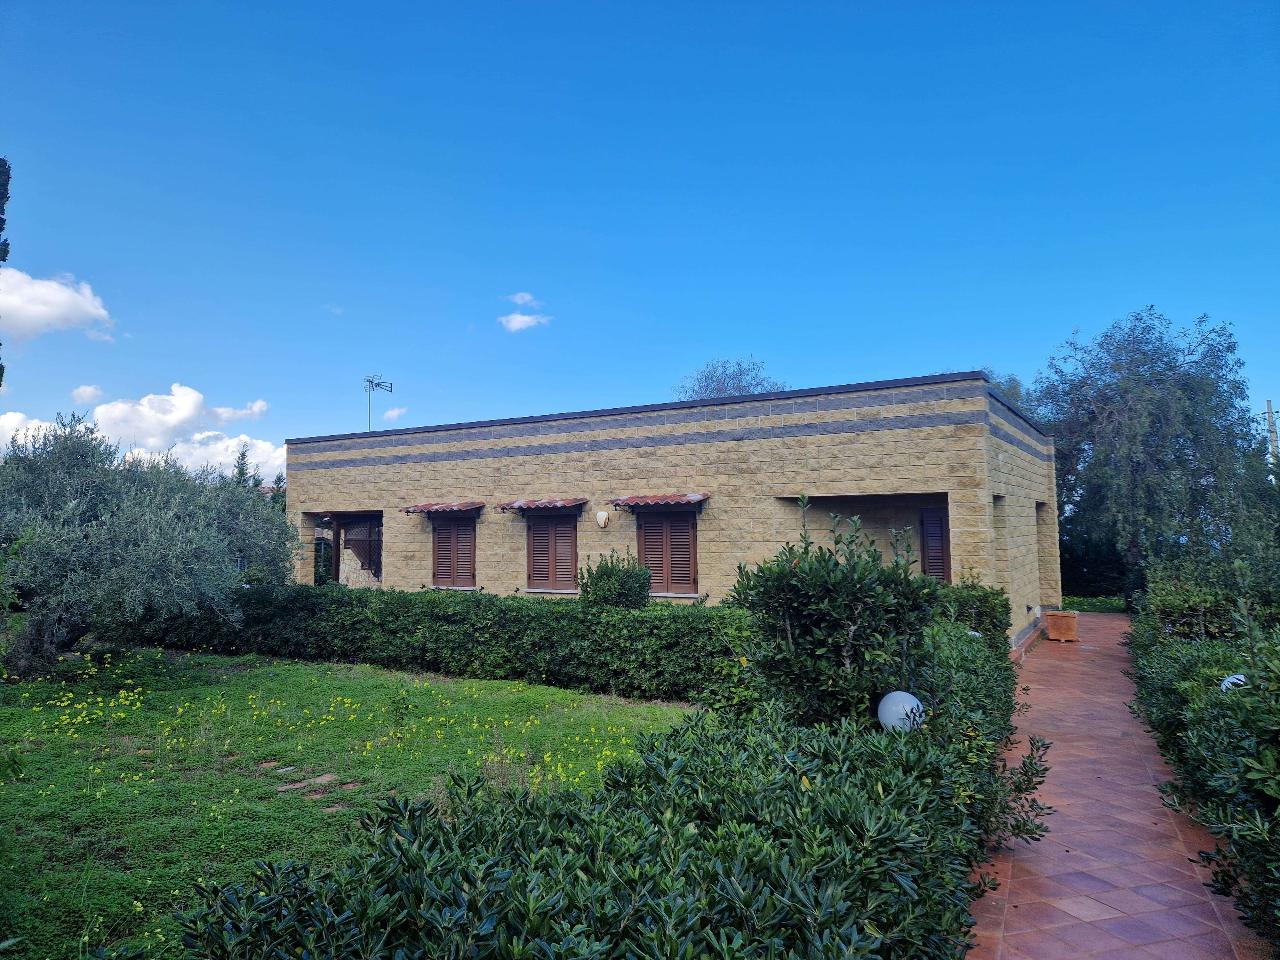 Villa unifamiliare in vendita a Termini Imerese